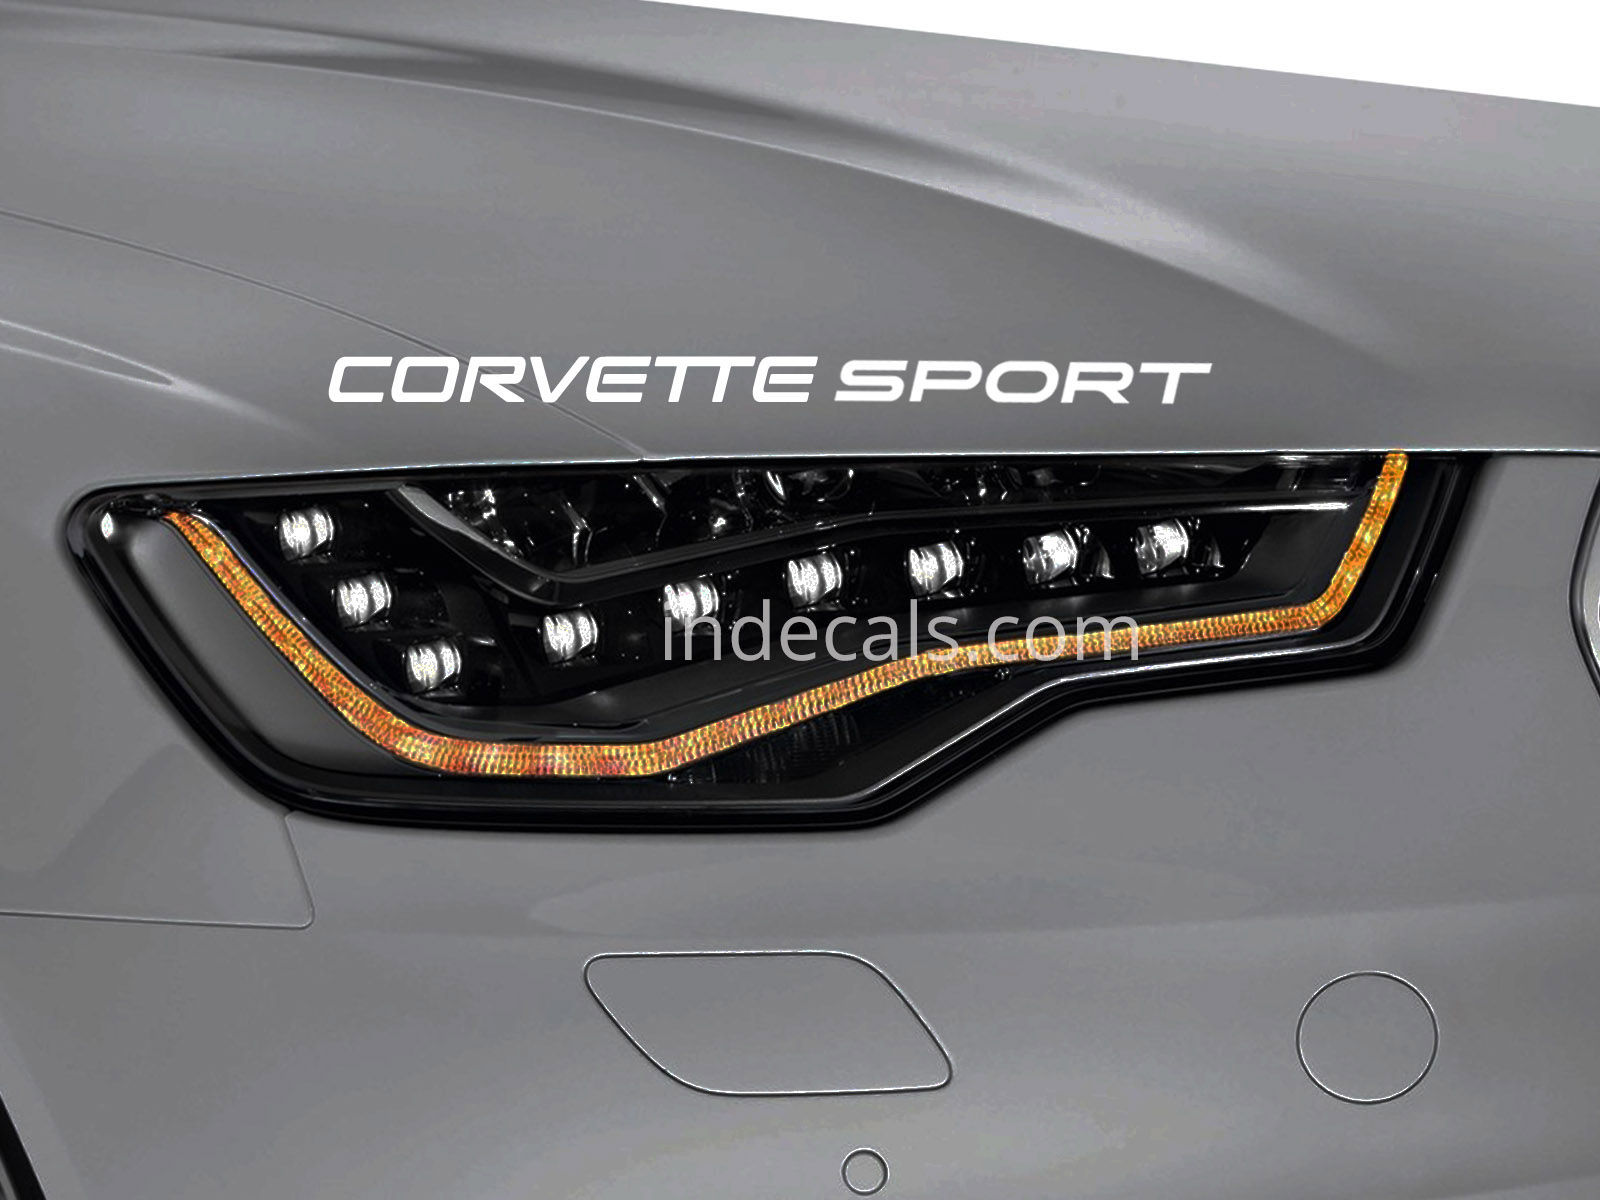 1 x Corvette Sport Sticker for Eyebrow - White